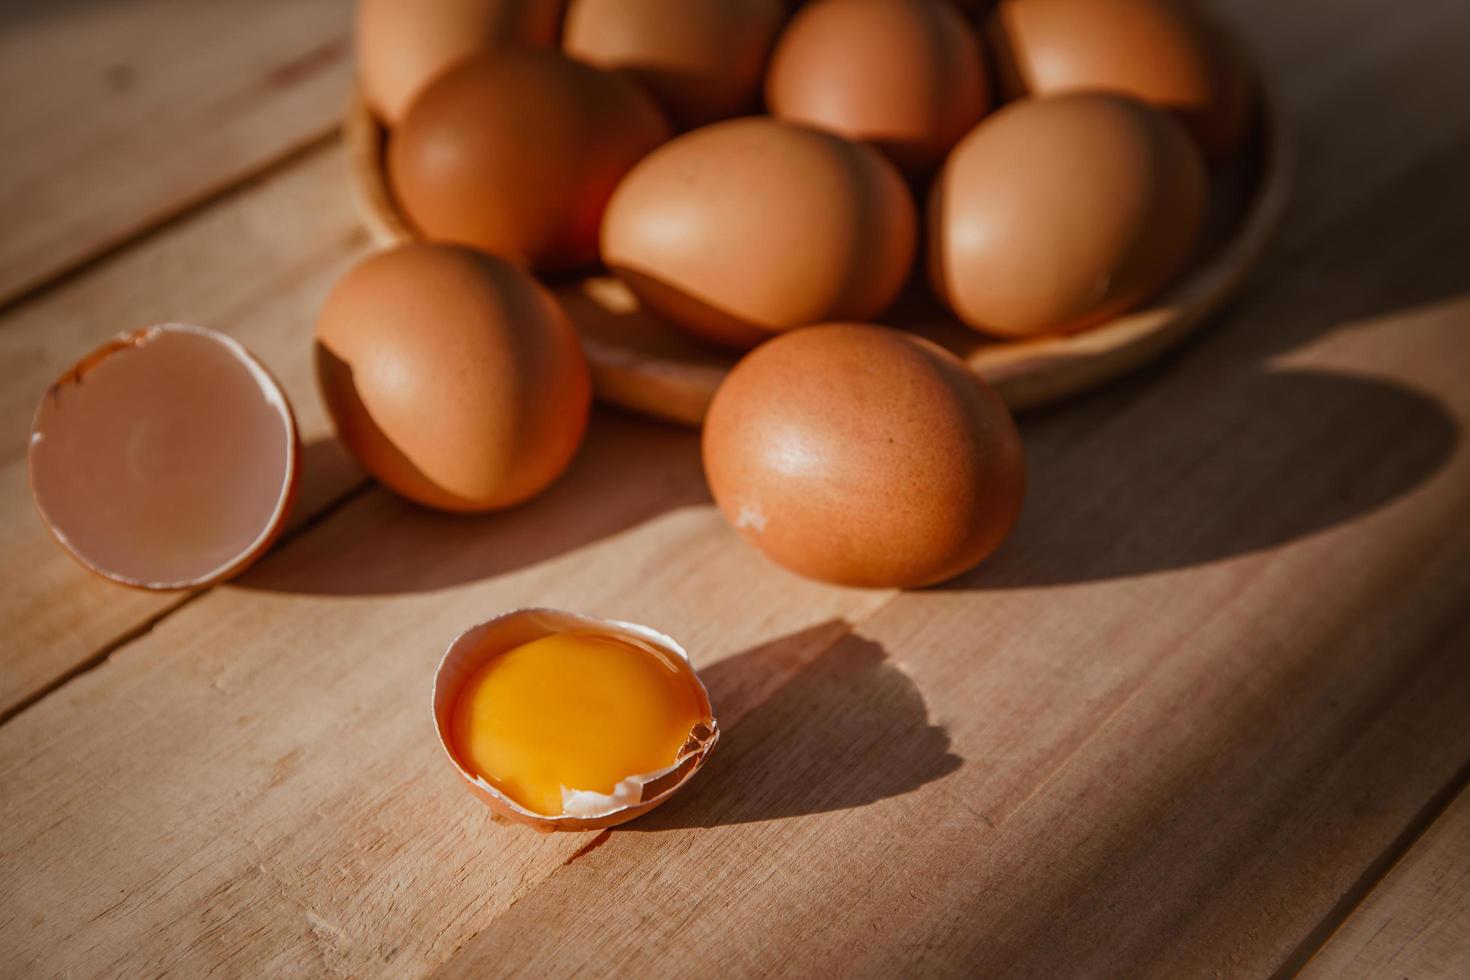 le uova giacciono su vassoi di legno e hanno uova rotte. foto